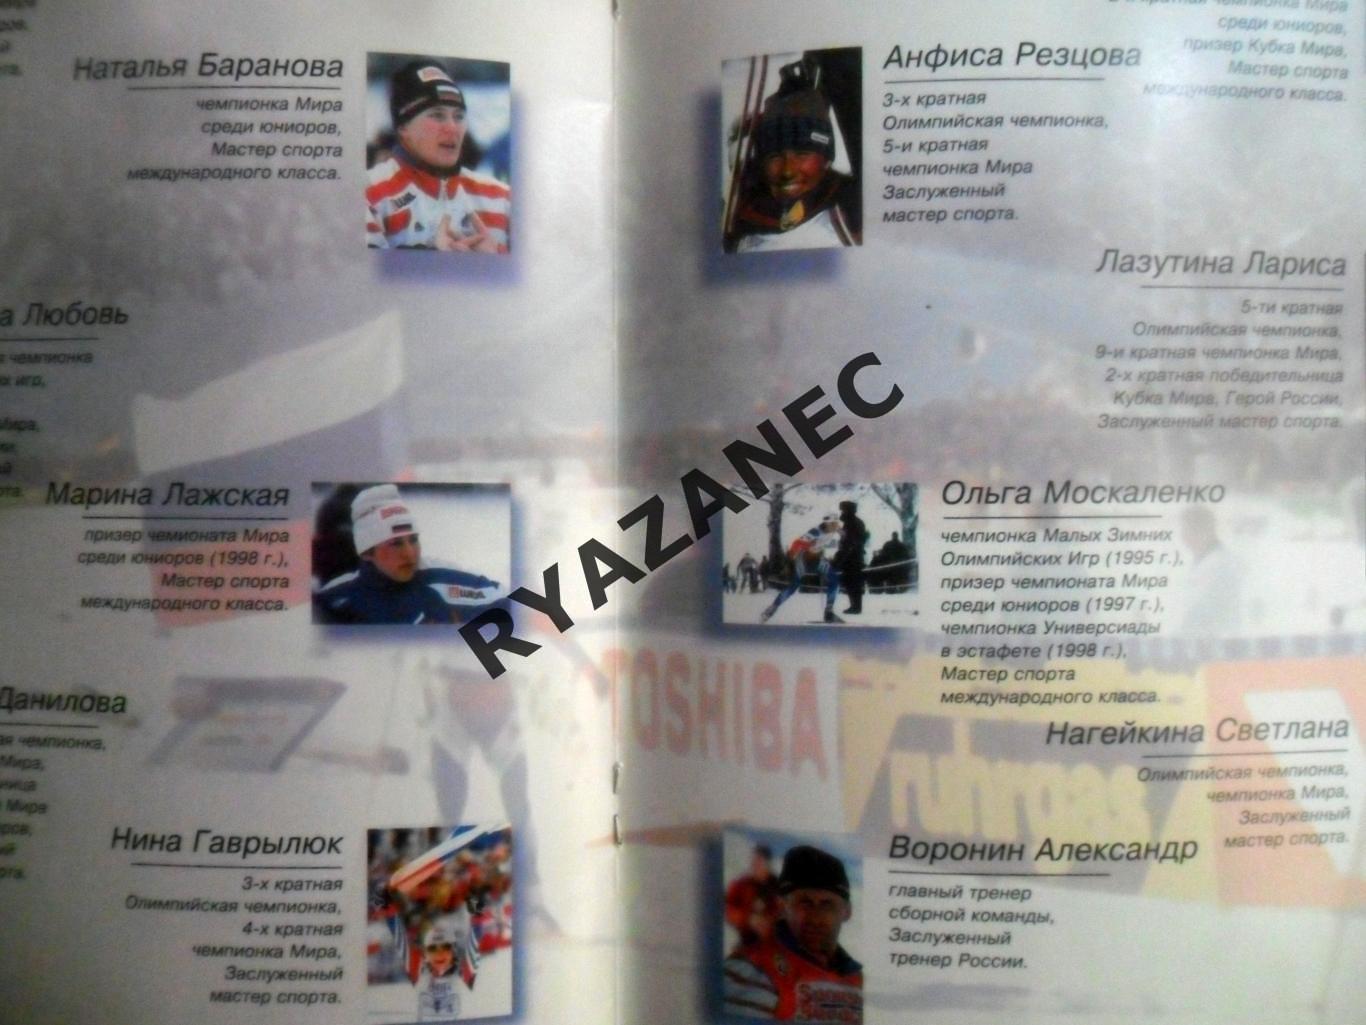 Кубок мира по лыжным гонкам - Москва, 8-9 января 2000 года. 2